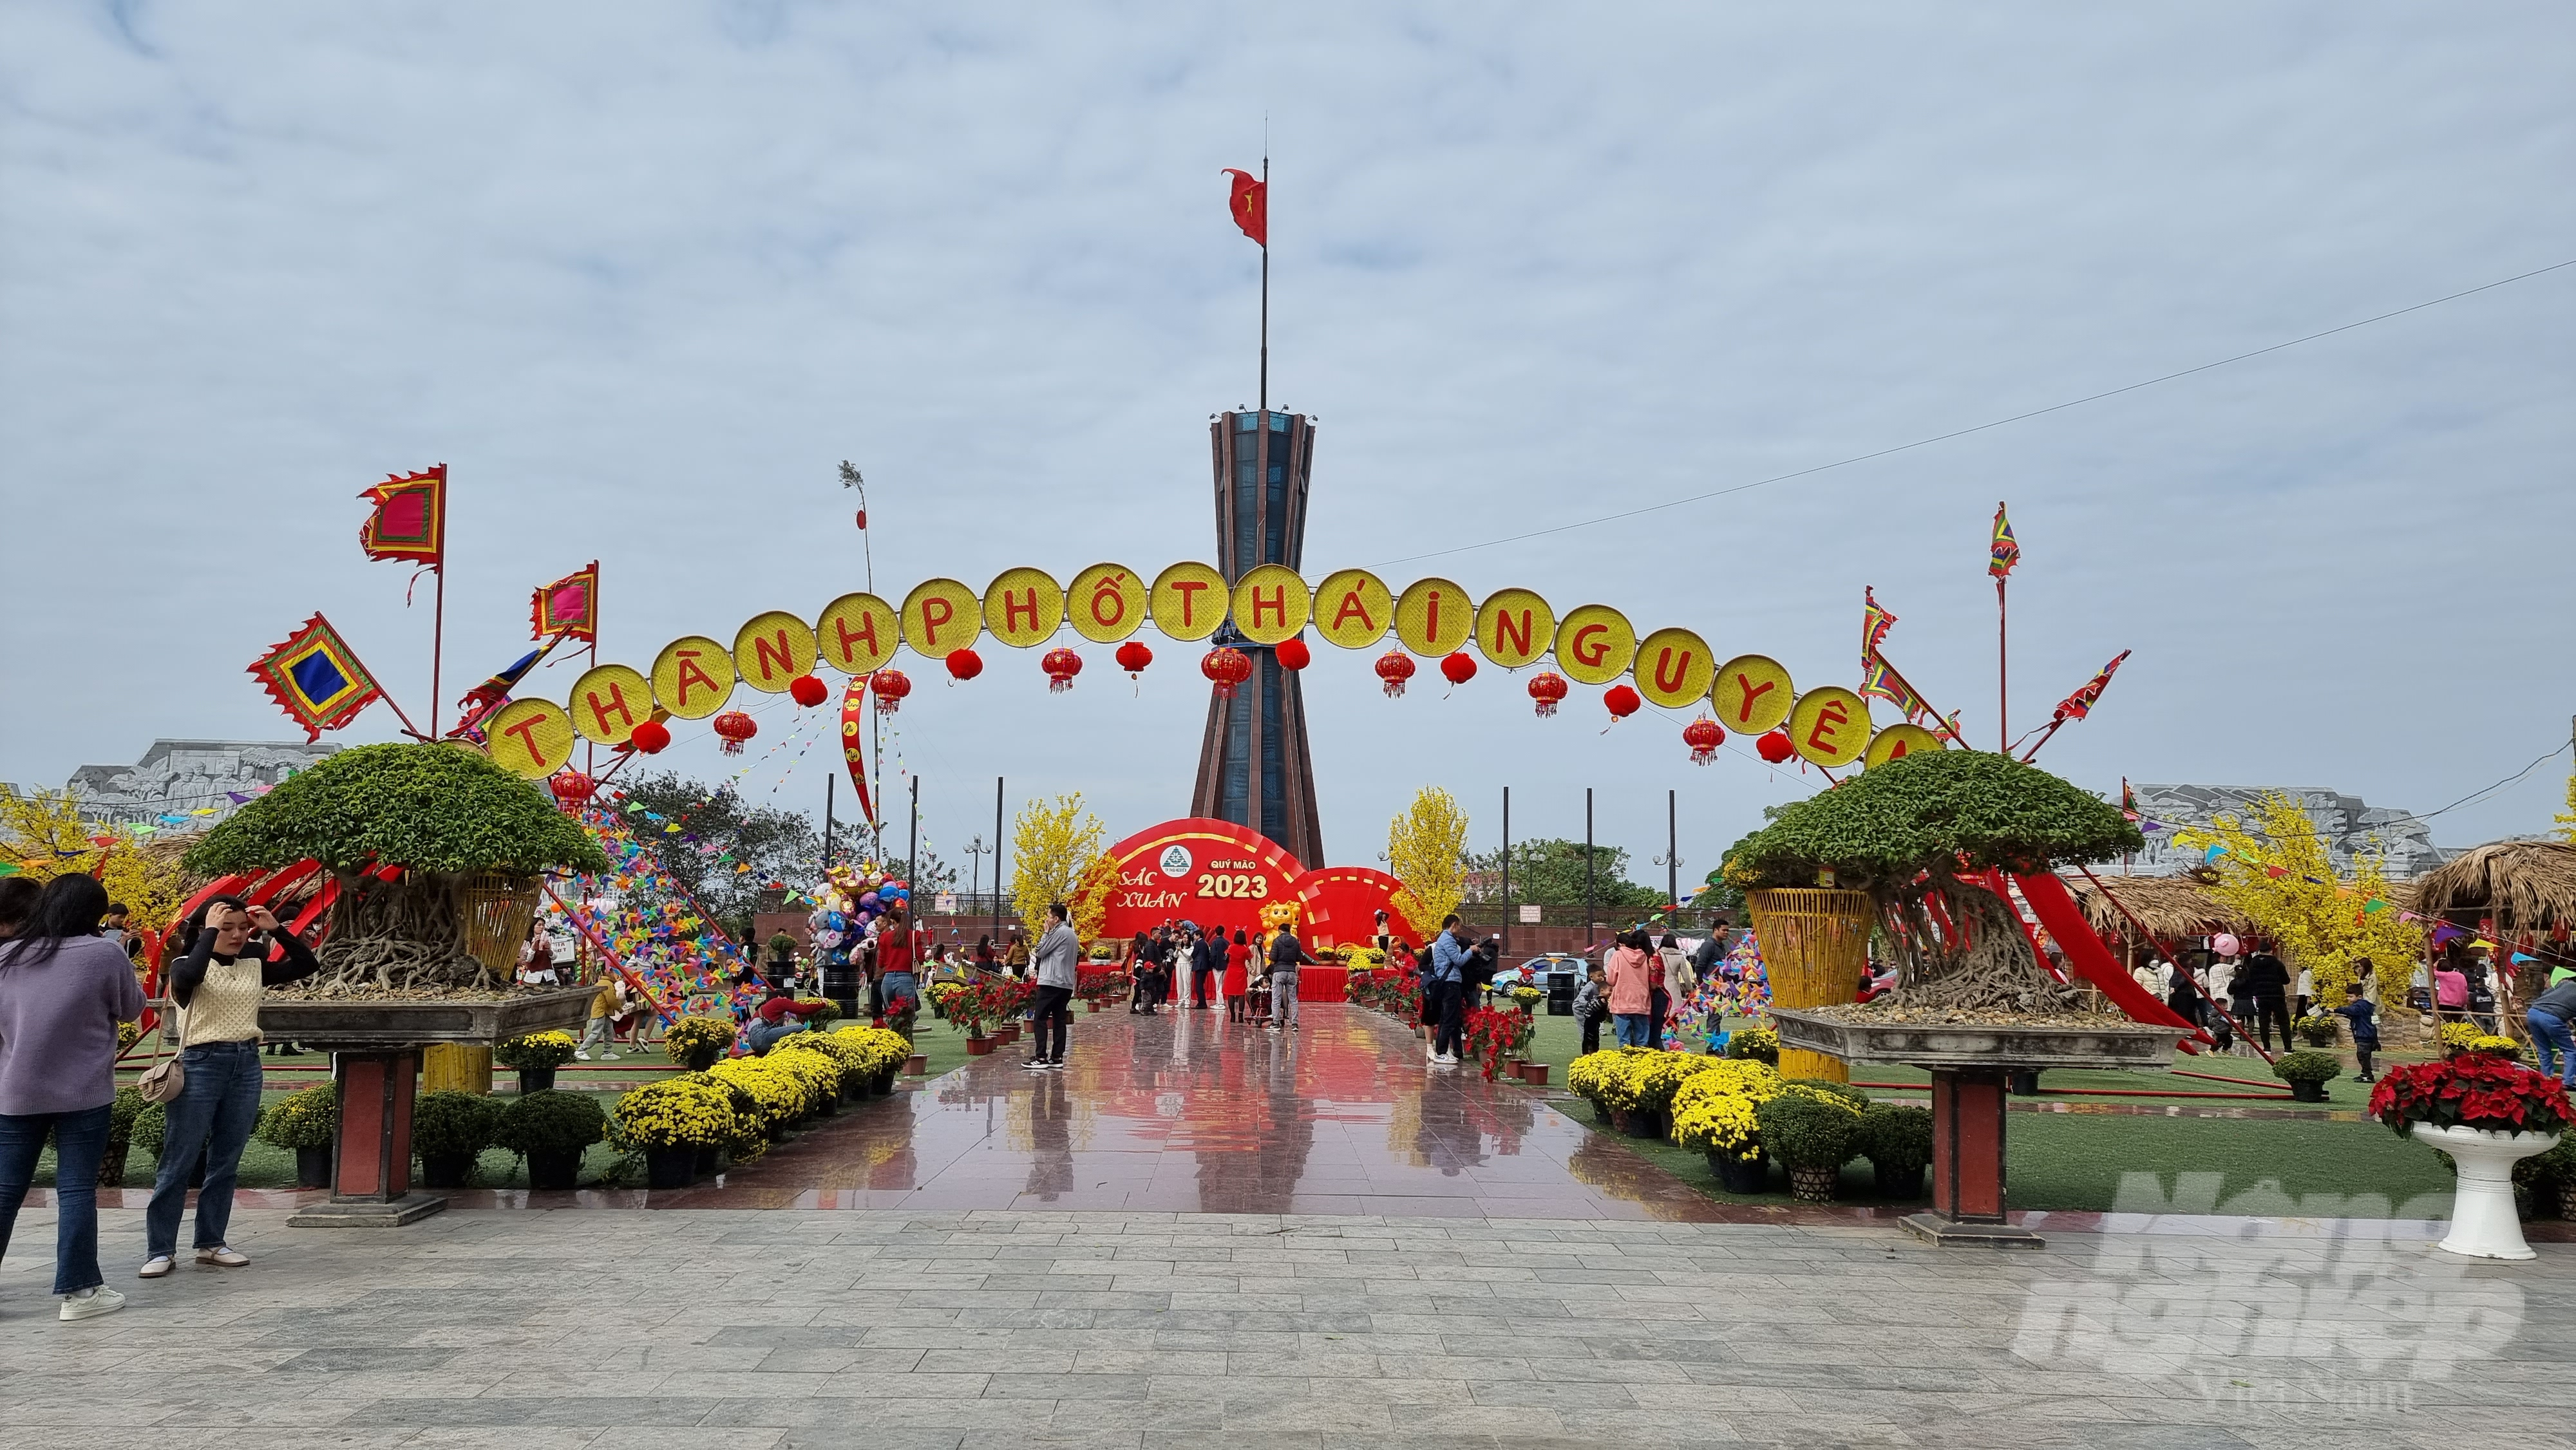 Lễ hội Sắc xuân được tổ chức tại Quảng trường Võ Nguyên Giáp, thành phố Thái Nguyên. Ảnh: TN.